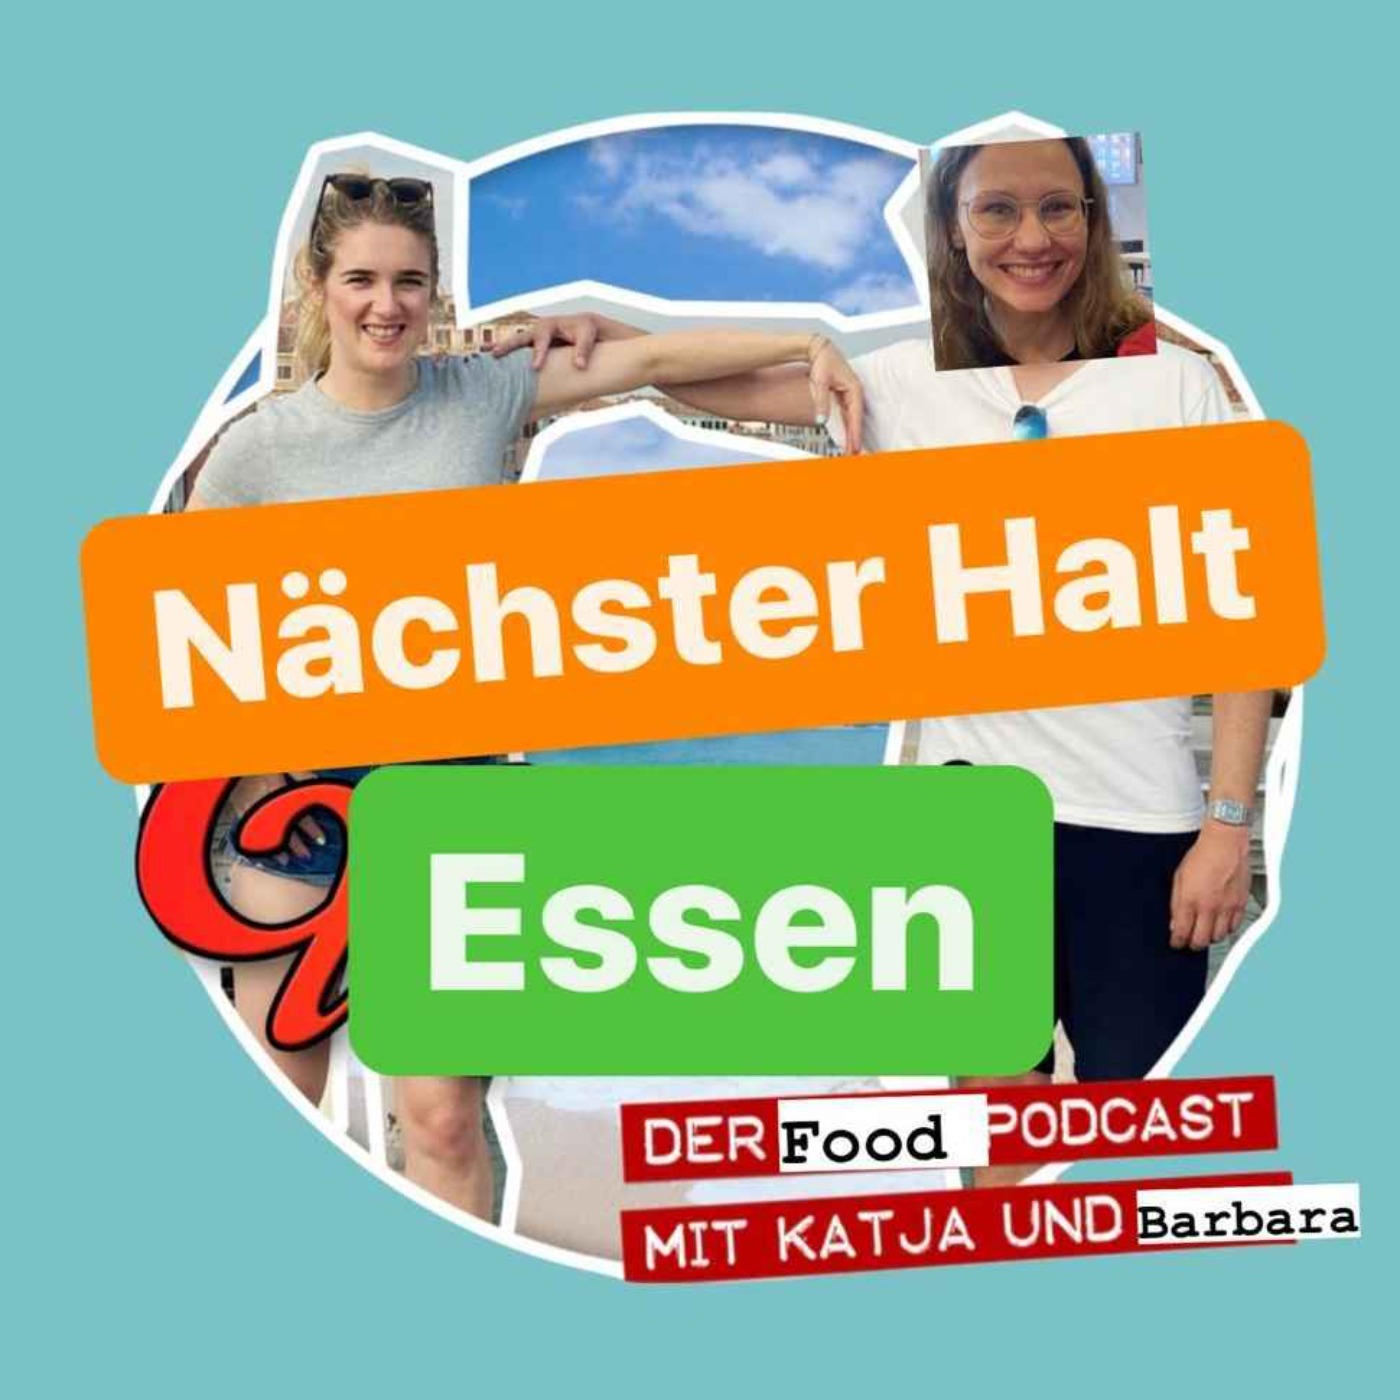 Nächster Halt Essen - Der Food Podcast (Folge 1: Unser Lieblingsessen)